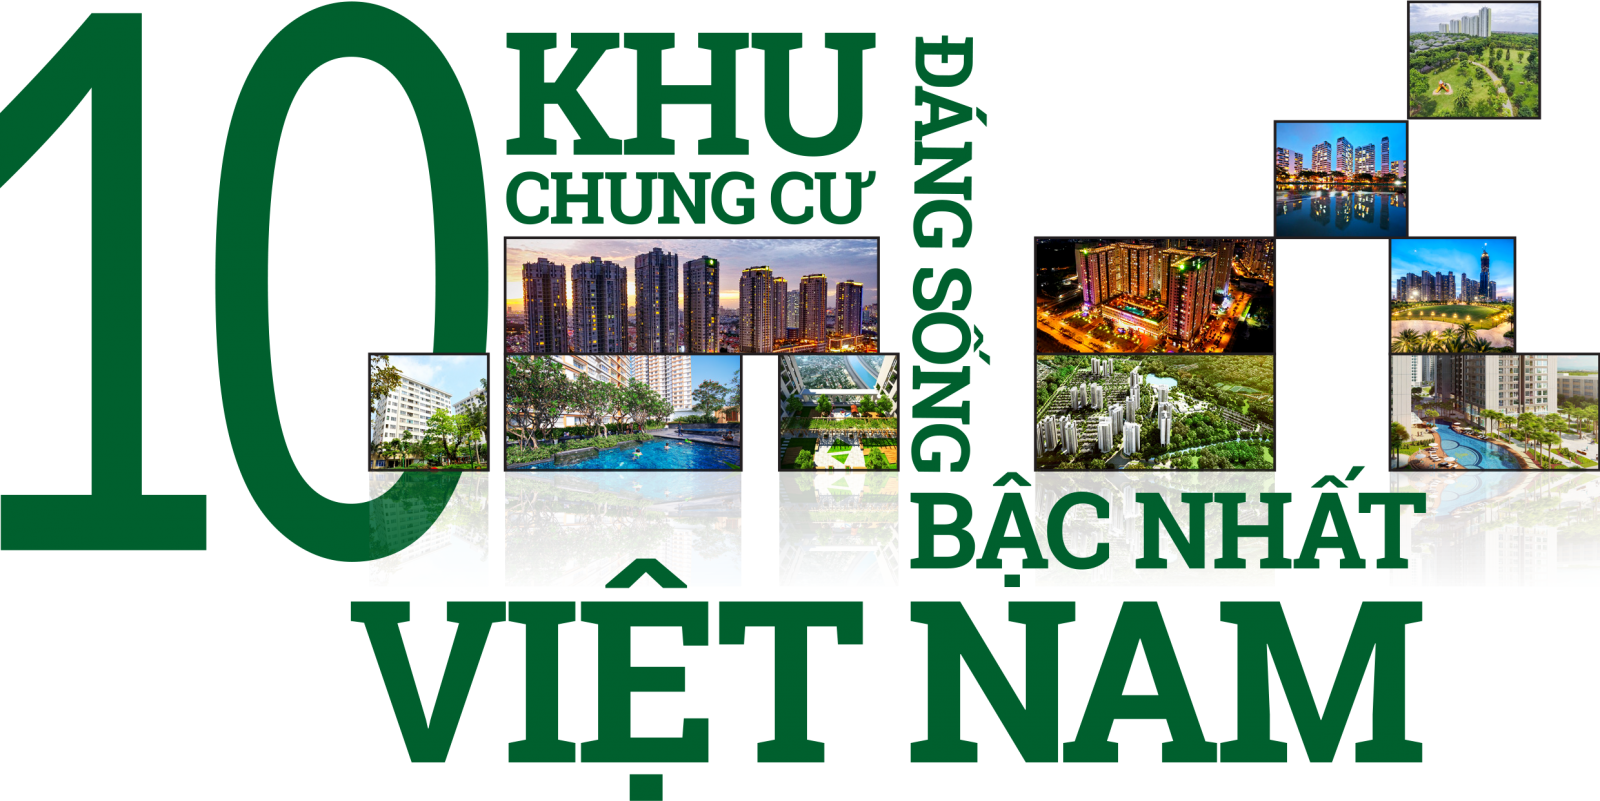 Top 10 khu chung cư đáng sống bậc nhất Việt Nam 2017